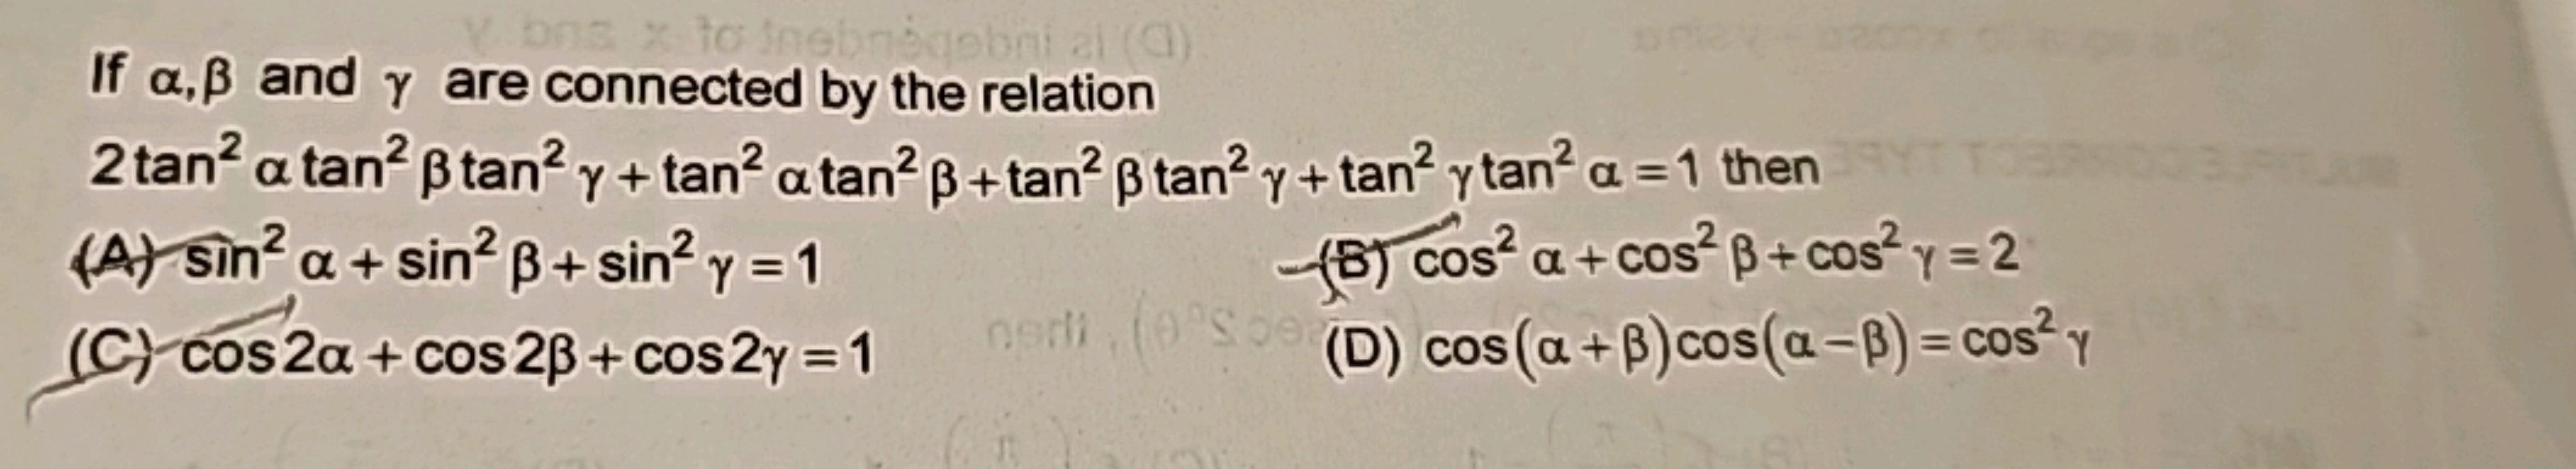 If α,β and γ are connected by the relation 2tan2αtan2βtan2γ+tan2αtan2β